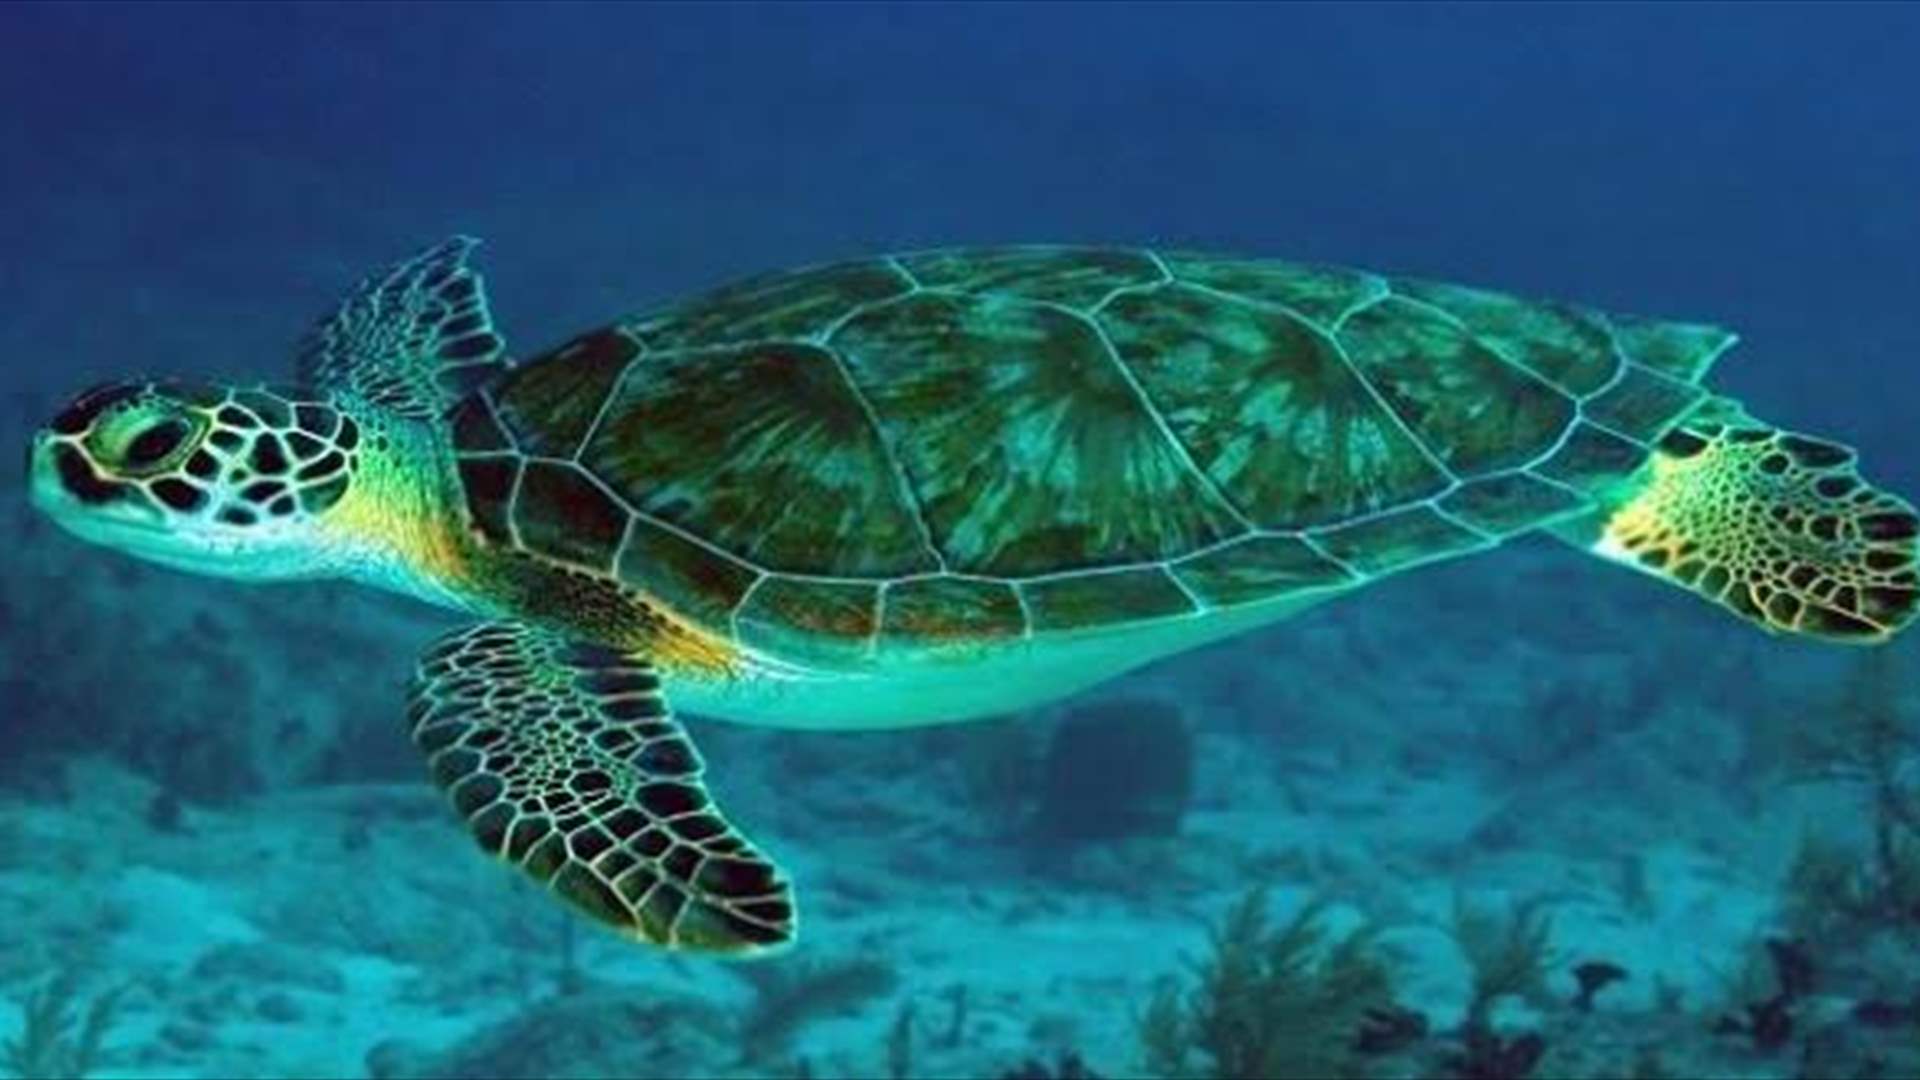 السلاحف البحرية في اليمن مهددة بالانقراض...ونقص في الذكور لهذا السبب! 